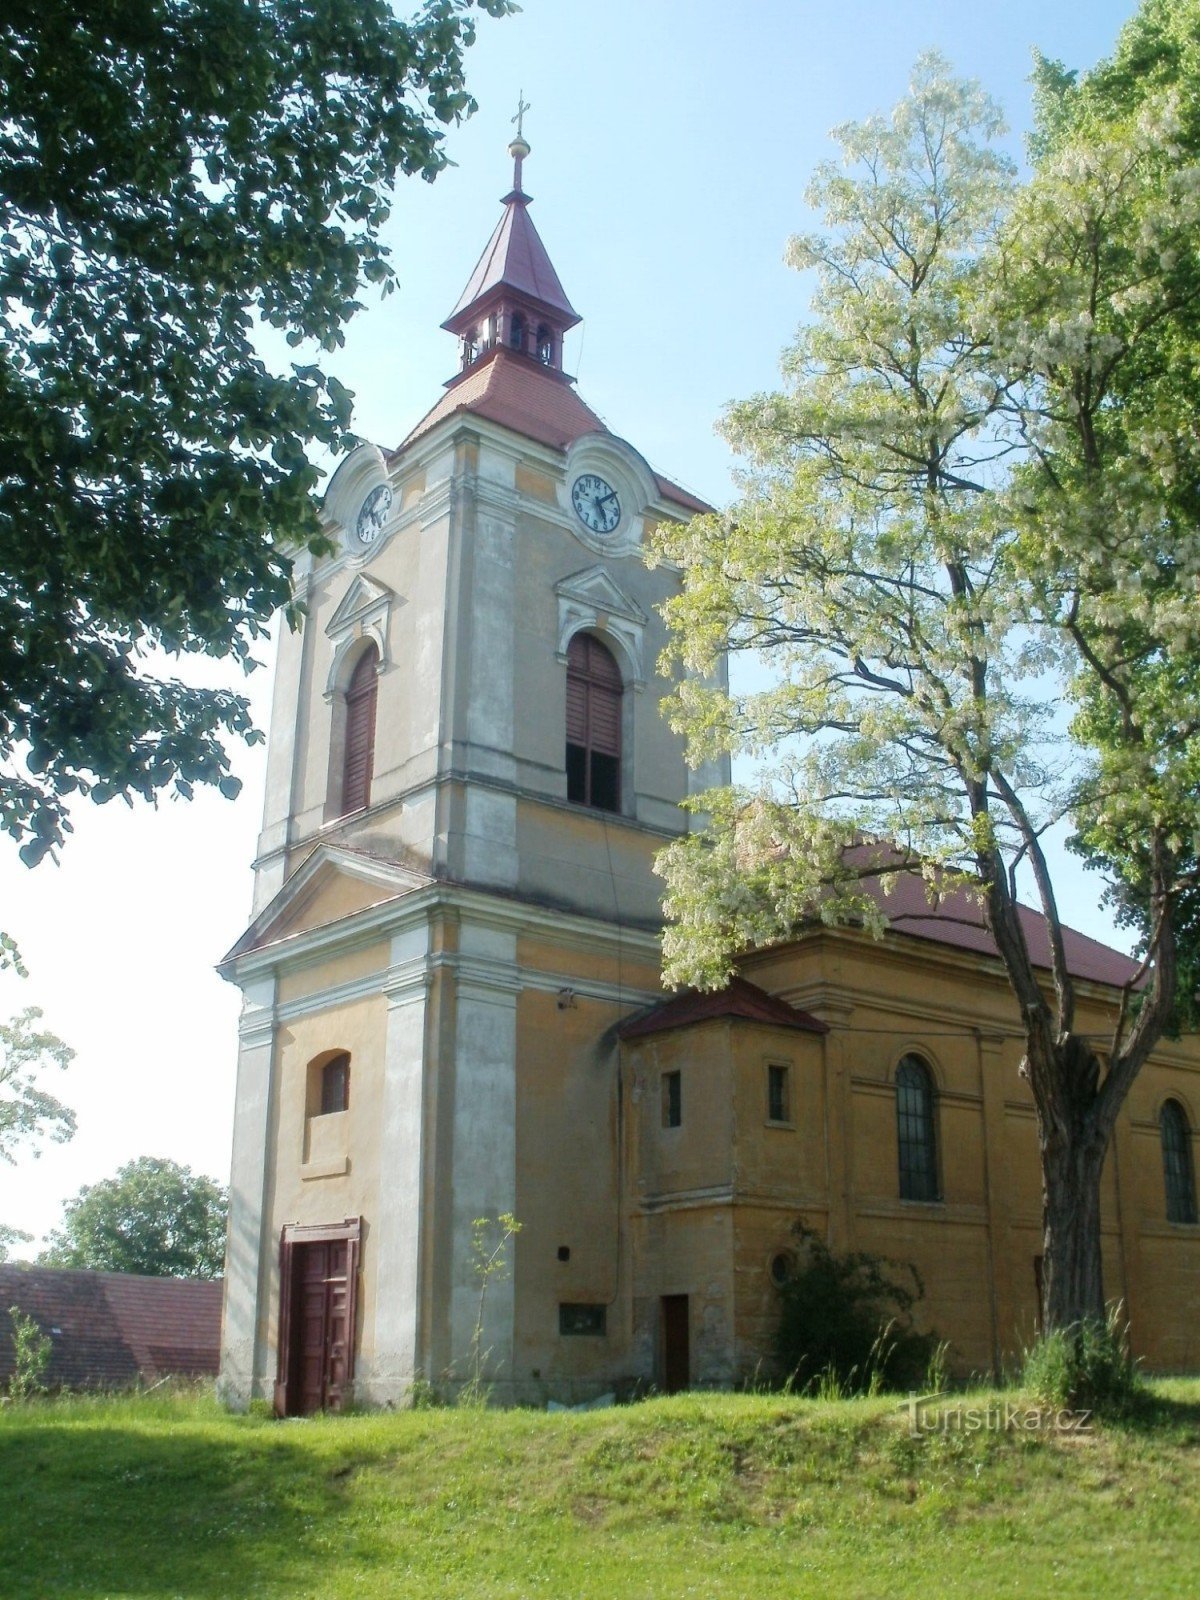 Jeníkovice - Kirche St. Peter und Paul